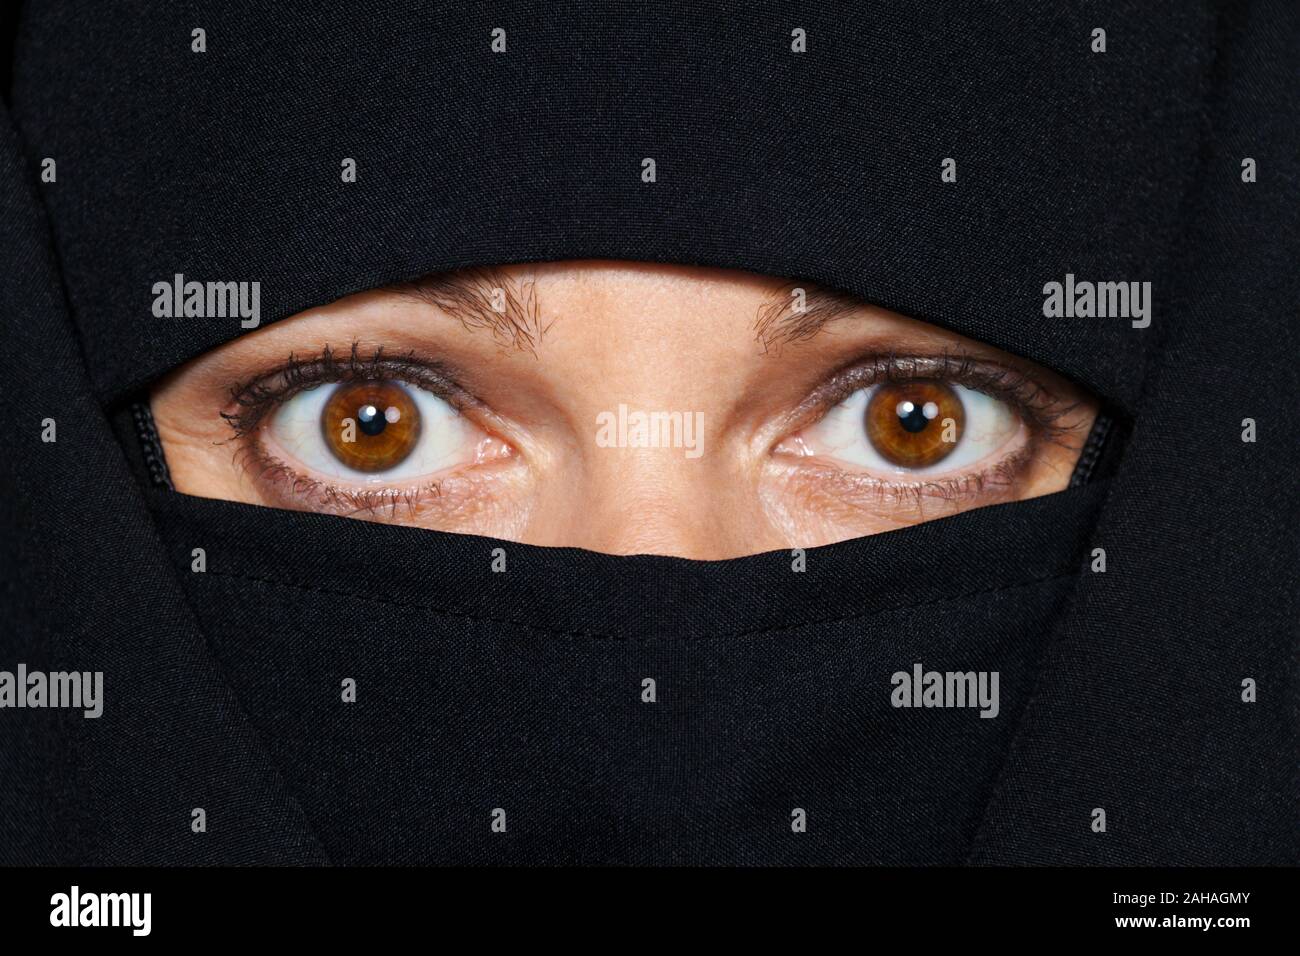 Symbolfoto Islam. Muslimische Frau mit Burka verschleiert ist. Signor: Sì Foto Stock